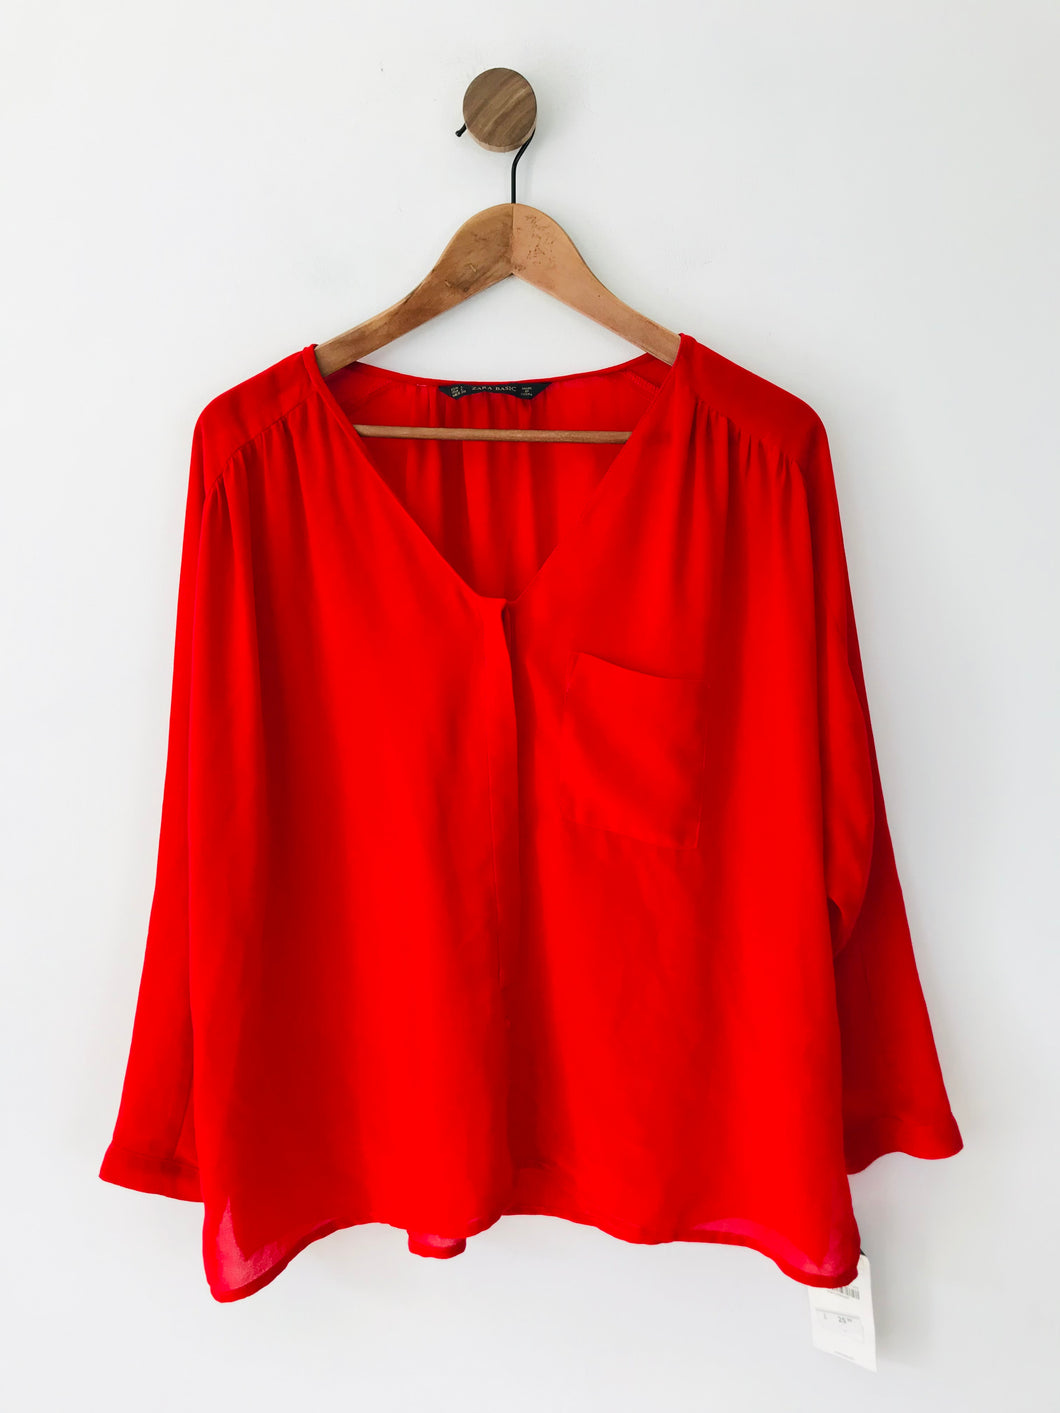 Zara Women's Button-Up Shirt NWT | L UK14 | Red